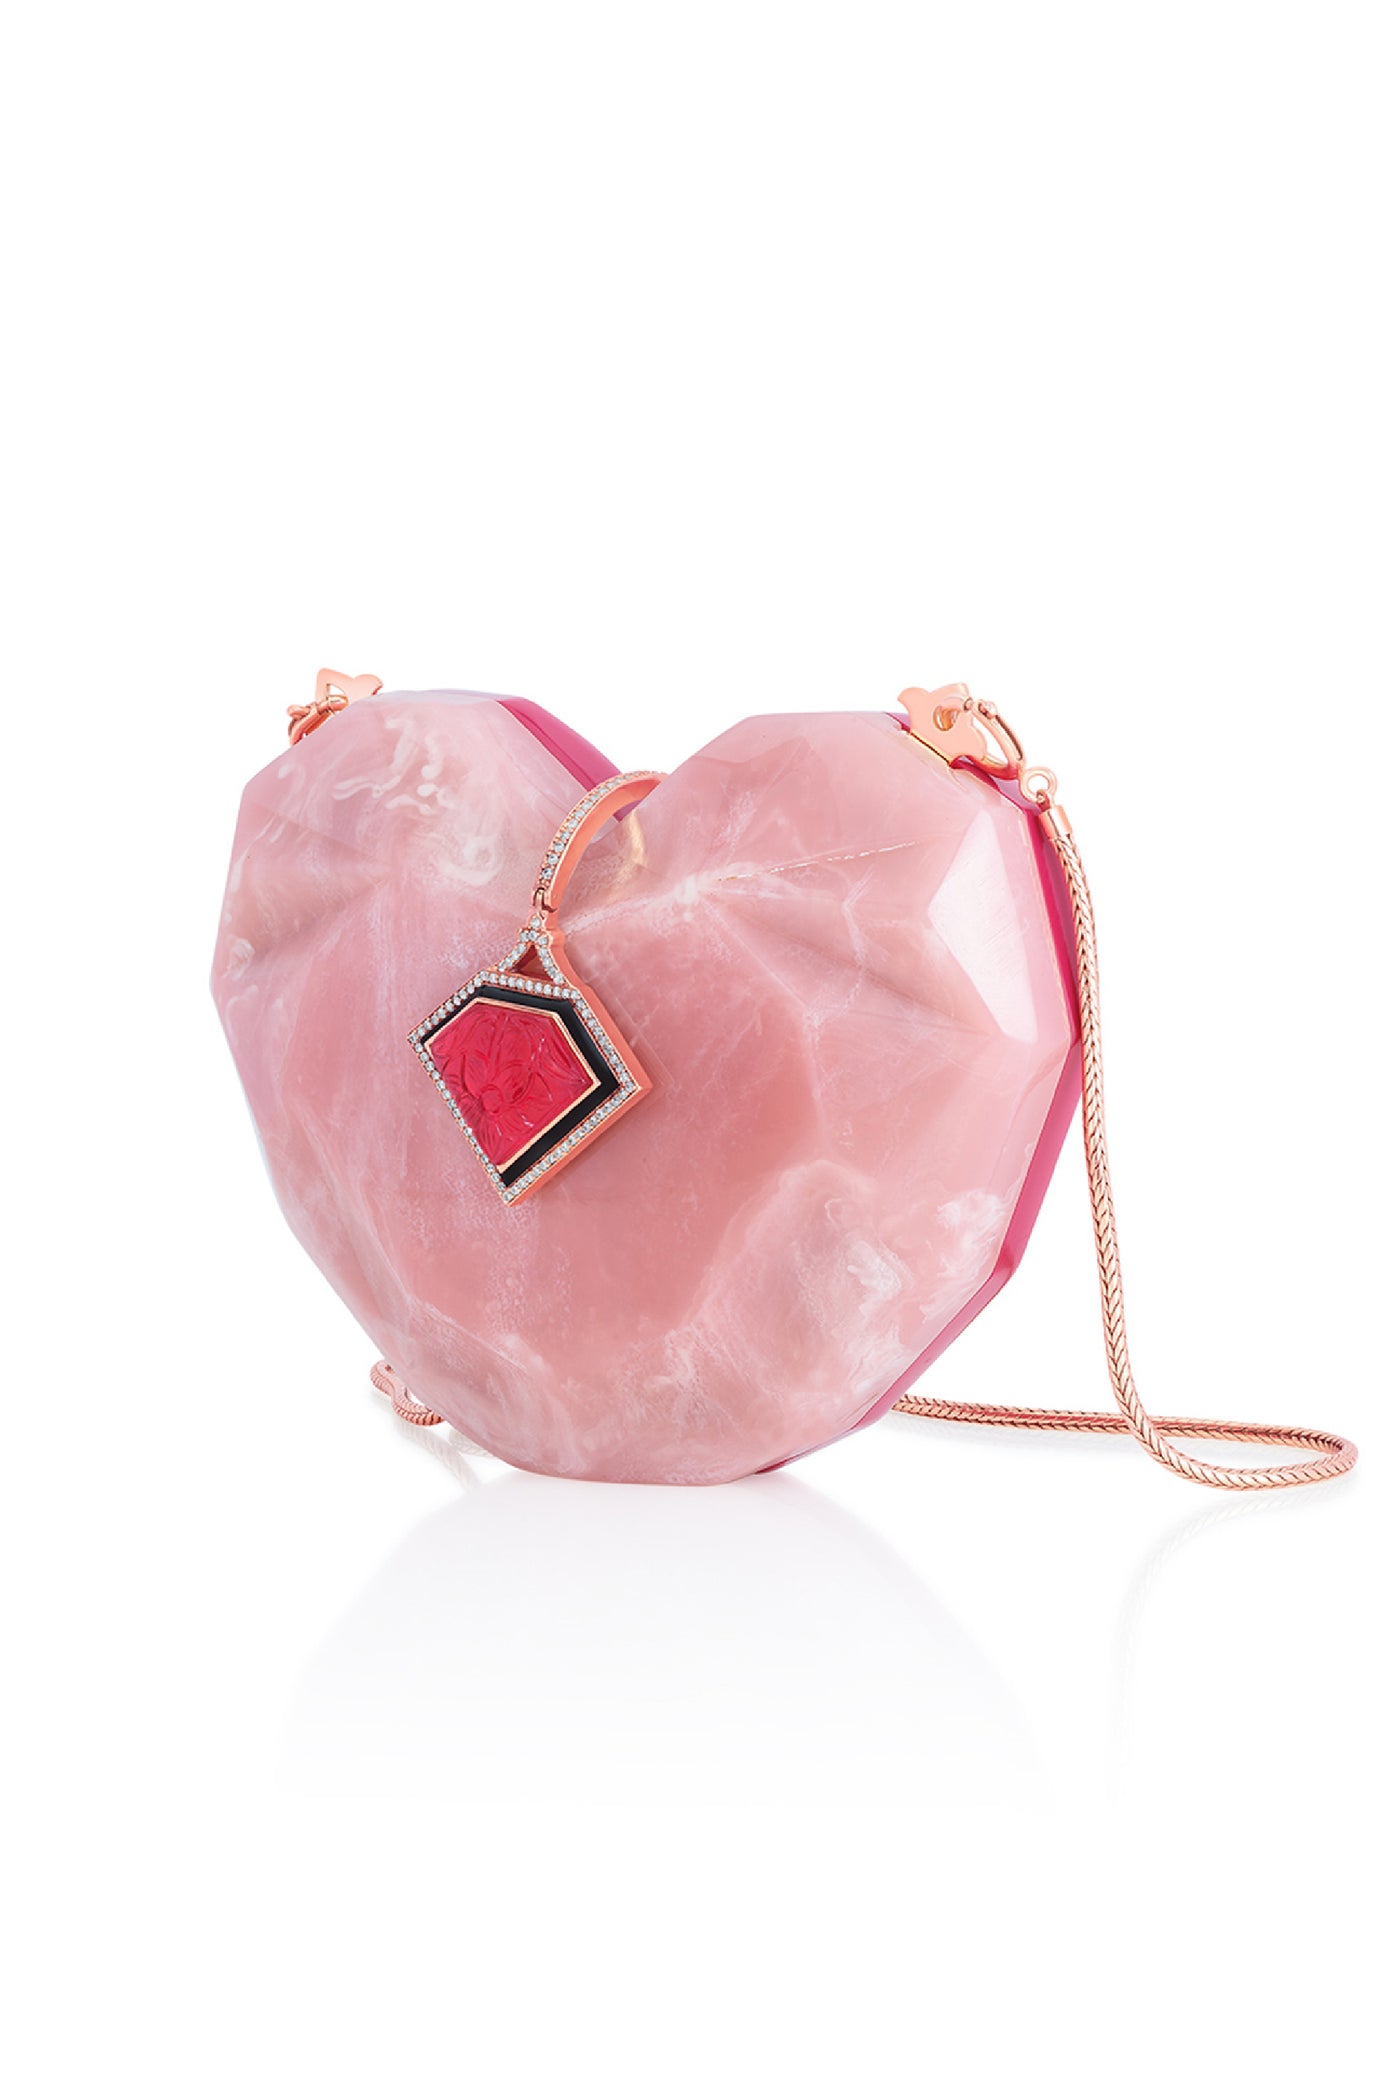 Isharya Rani Pink Heart Minaudière Accesories Indian designer wear online shopping melange singapore